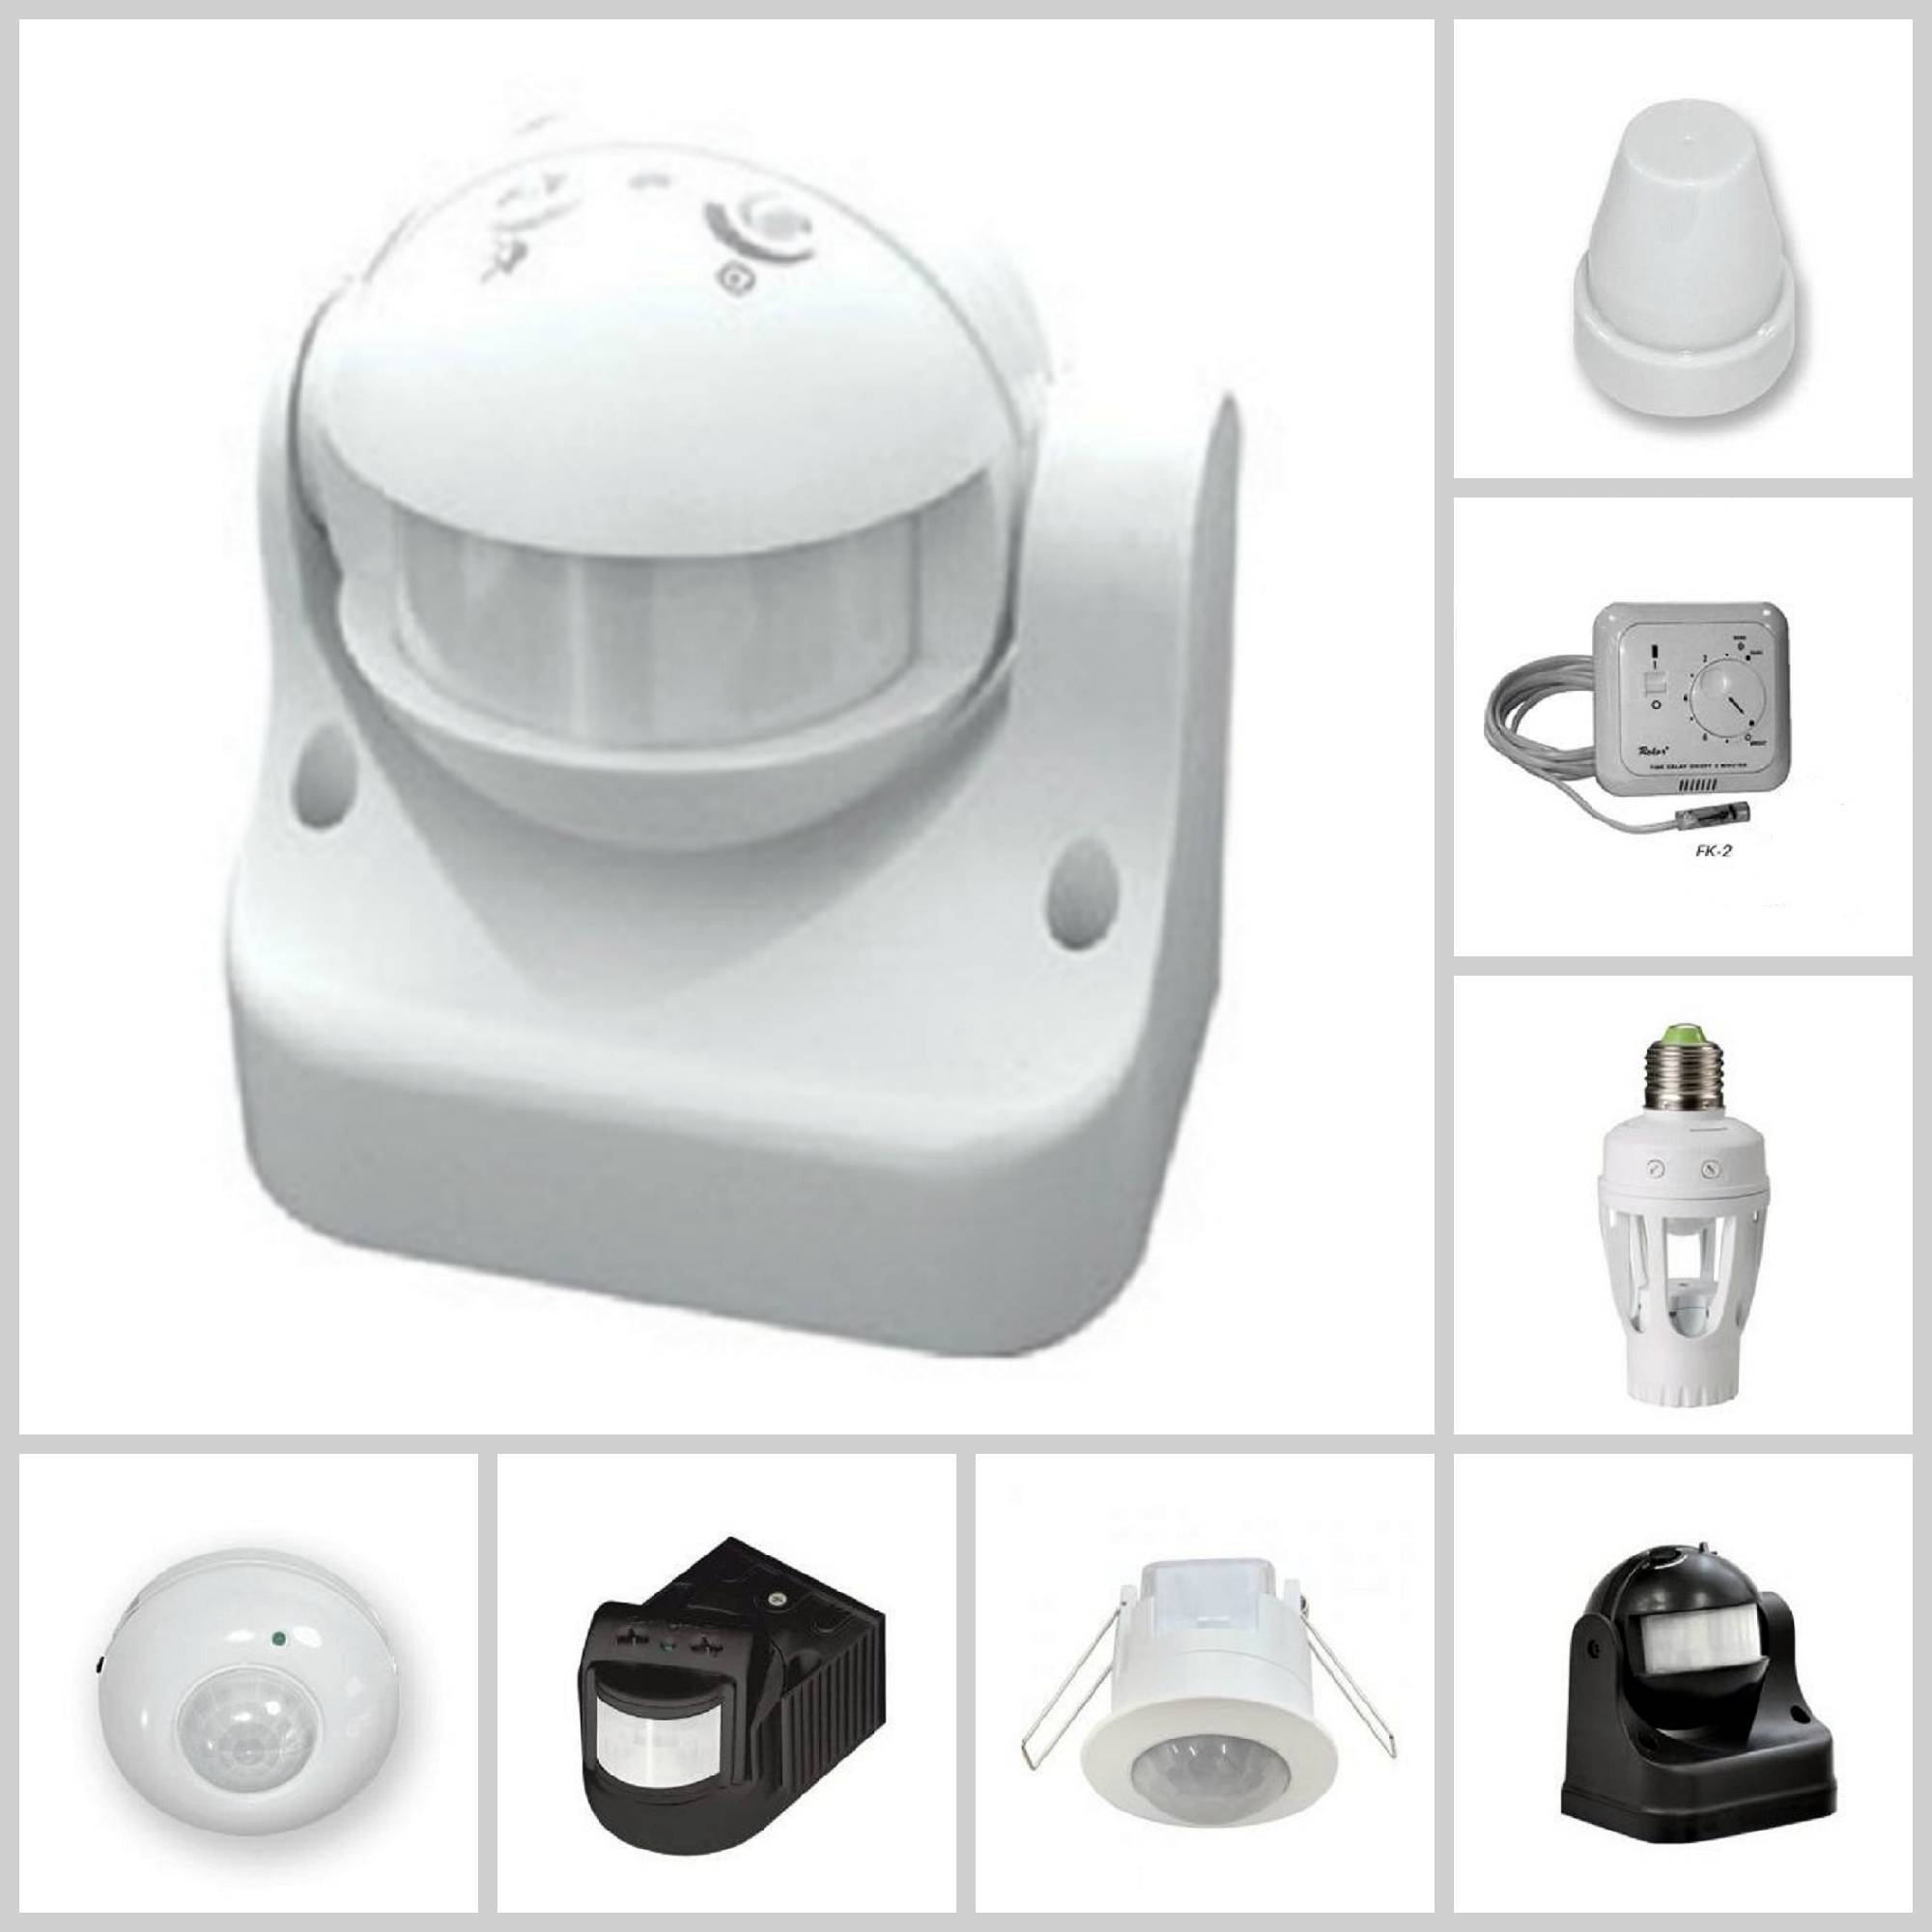 Светодиодный светильник с датчиком движения: устройство, принцип работы, монтаж и настройка